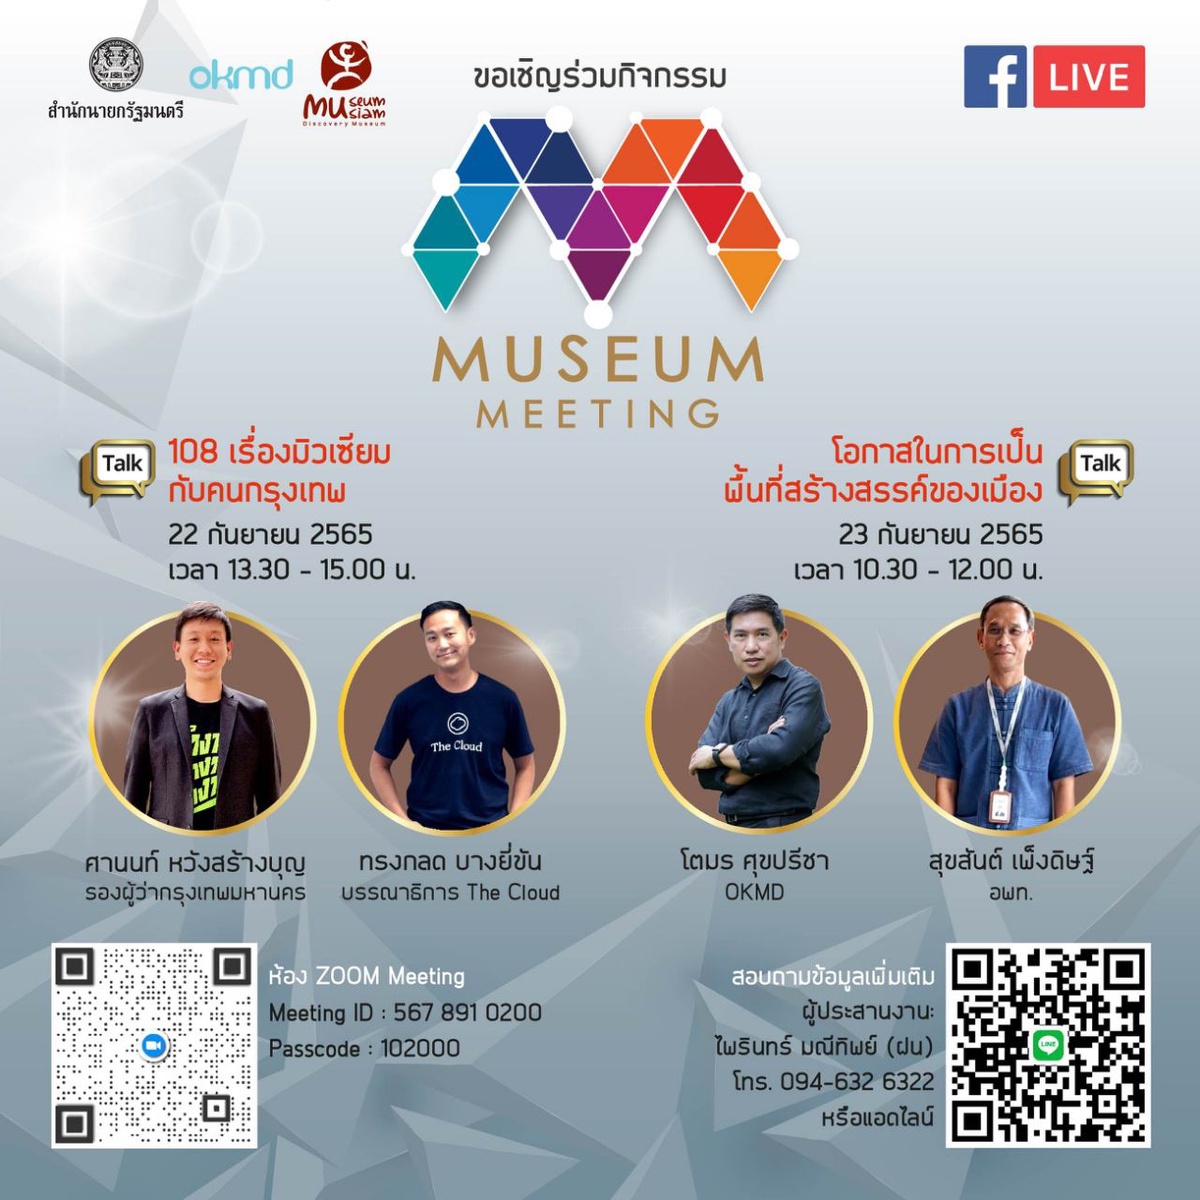 มิวเซียมสยาม ชวนเปิดมุมมองในงานเสวนาออนไลน์ Museum Meeting 2022 ร่วมสร้างสรรค์ให้พิพิธภัณฑ์สนุกกว่าที่คิด ผ่าน Museum Thailand